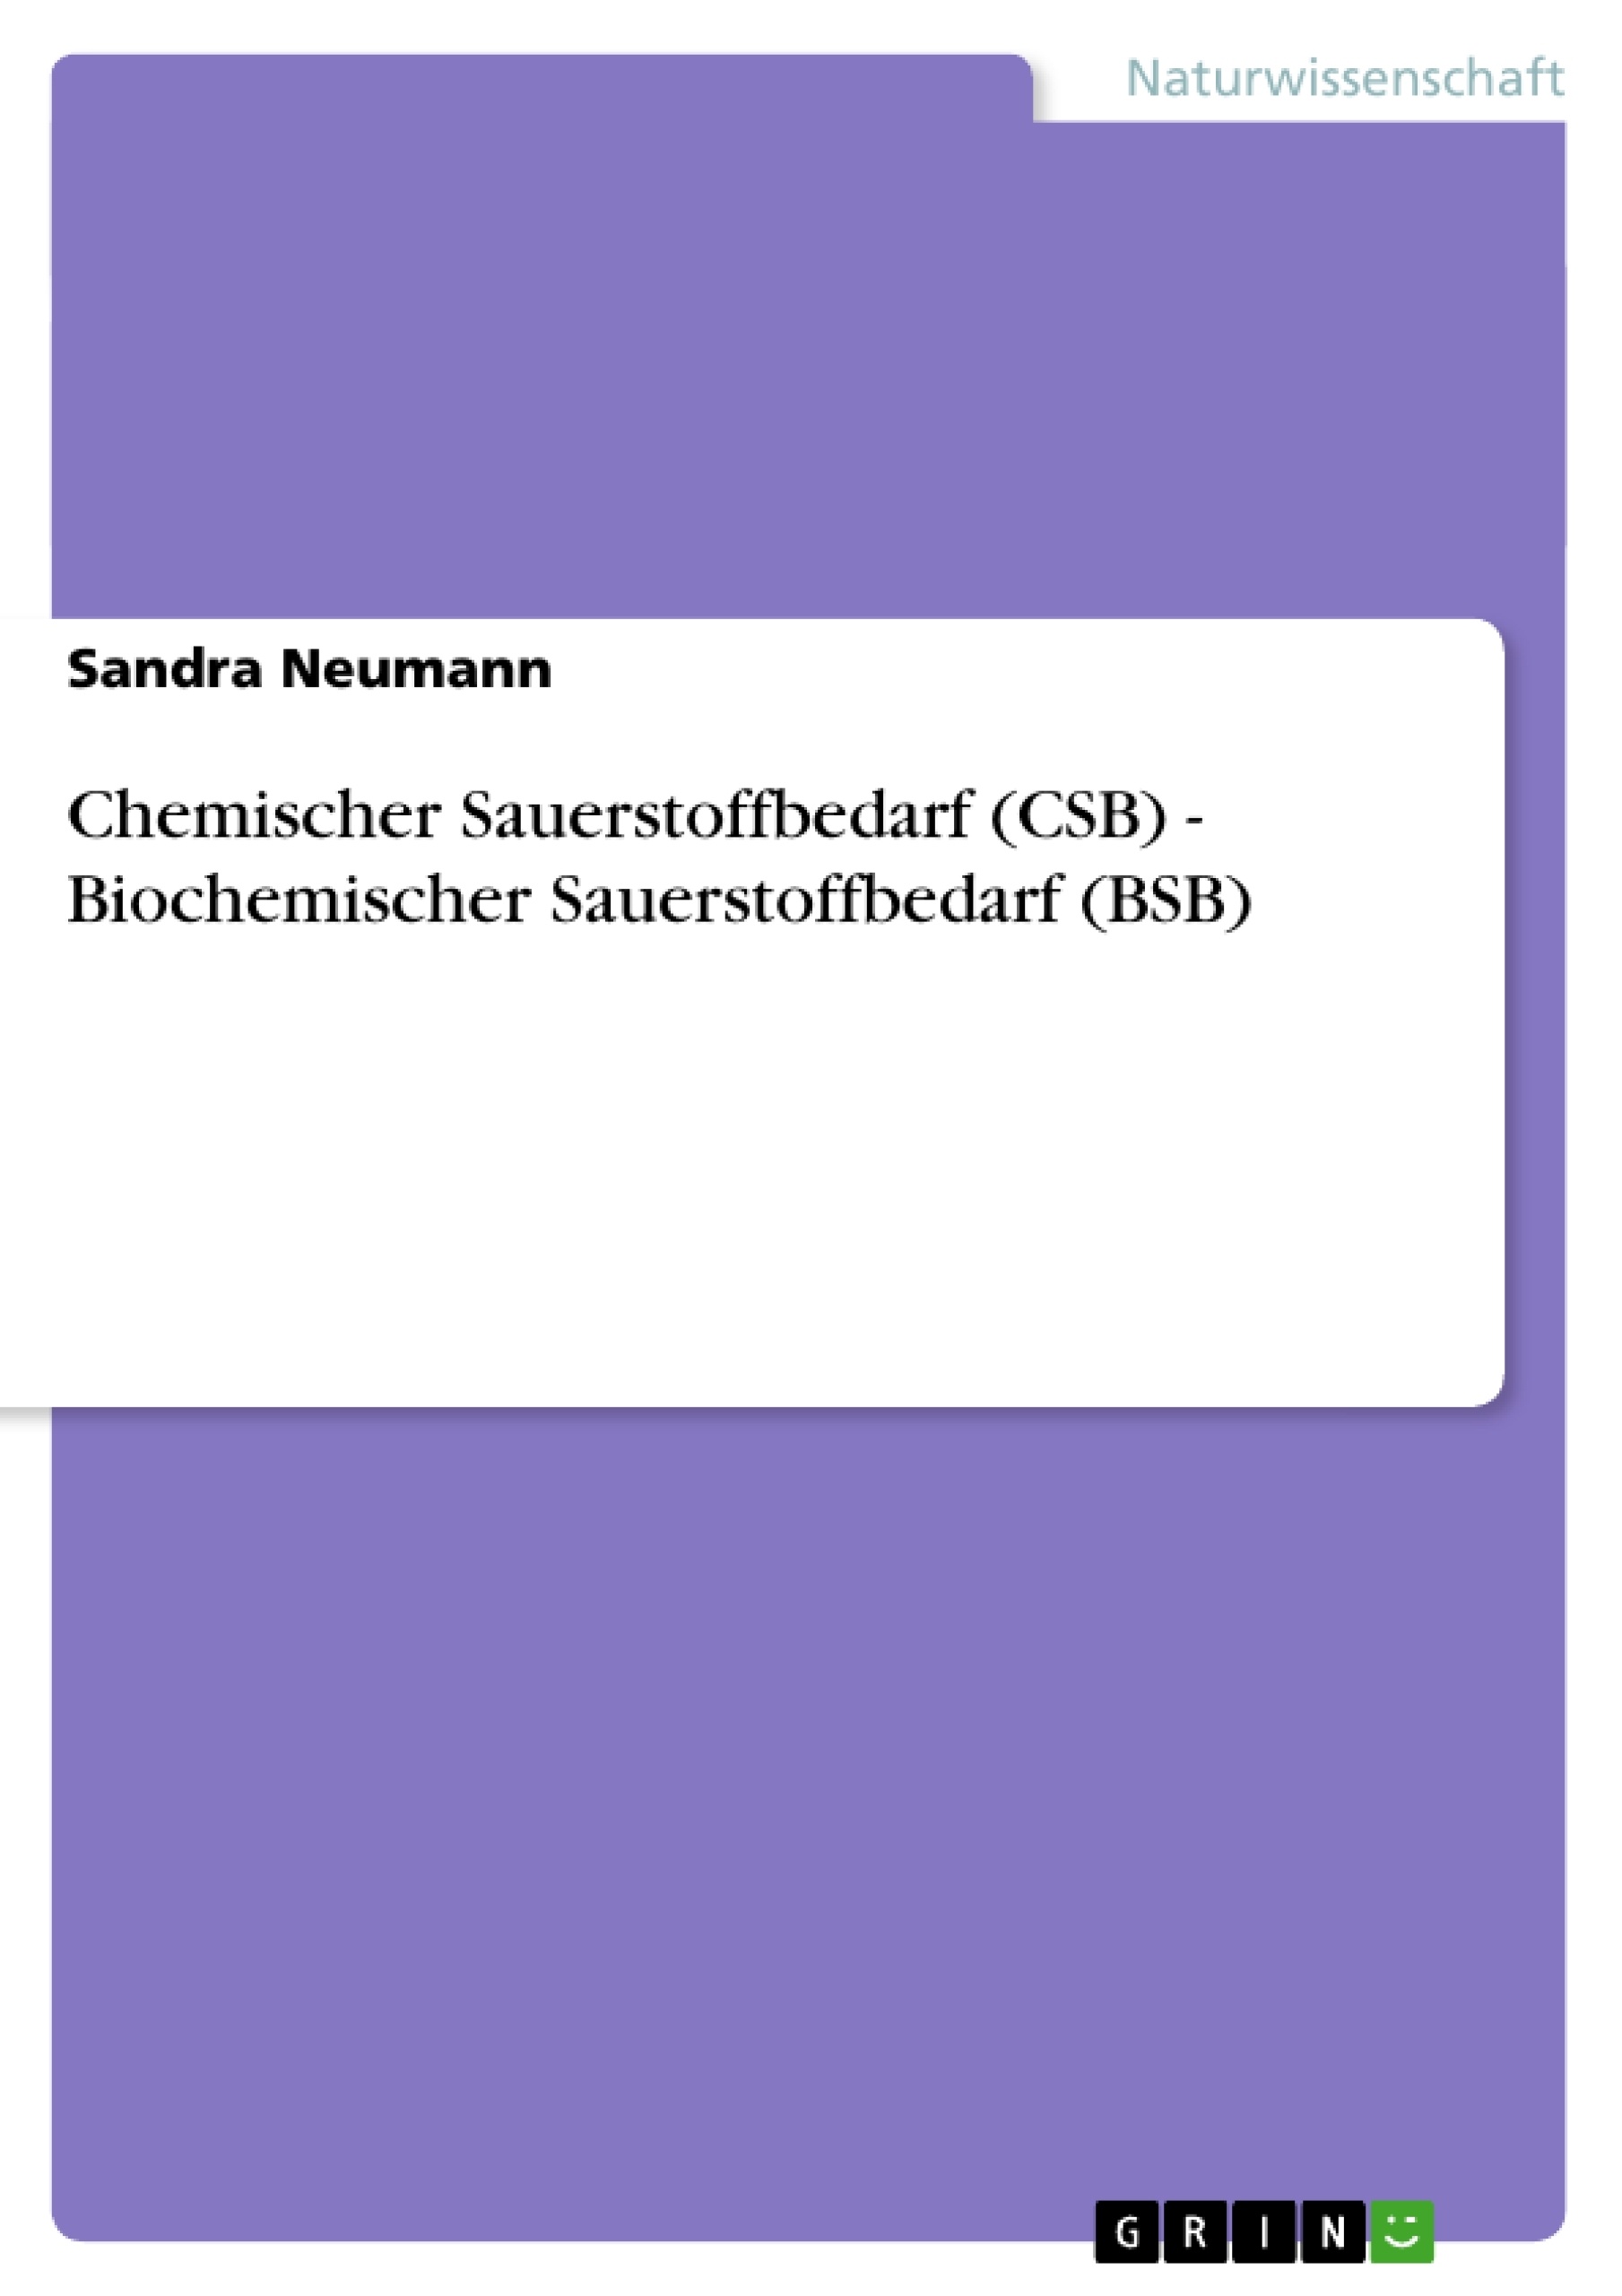 Titre: Chemischer Sauerstoffbedarf (CSB) - Biochemischer Sauerstoffbedarf (BSB)